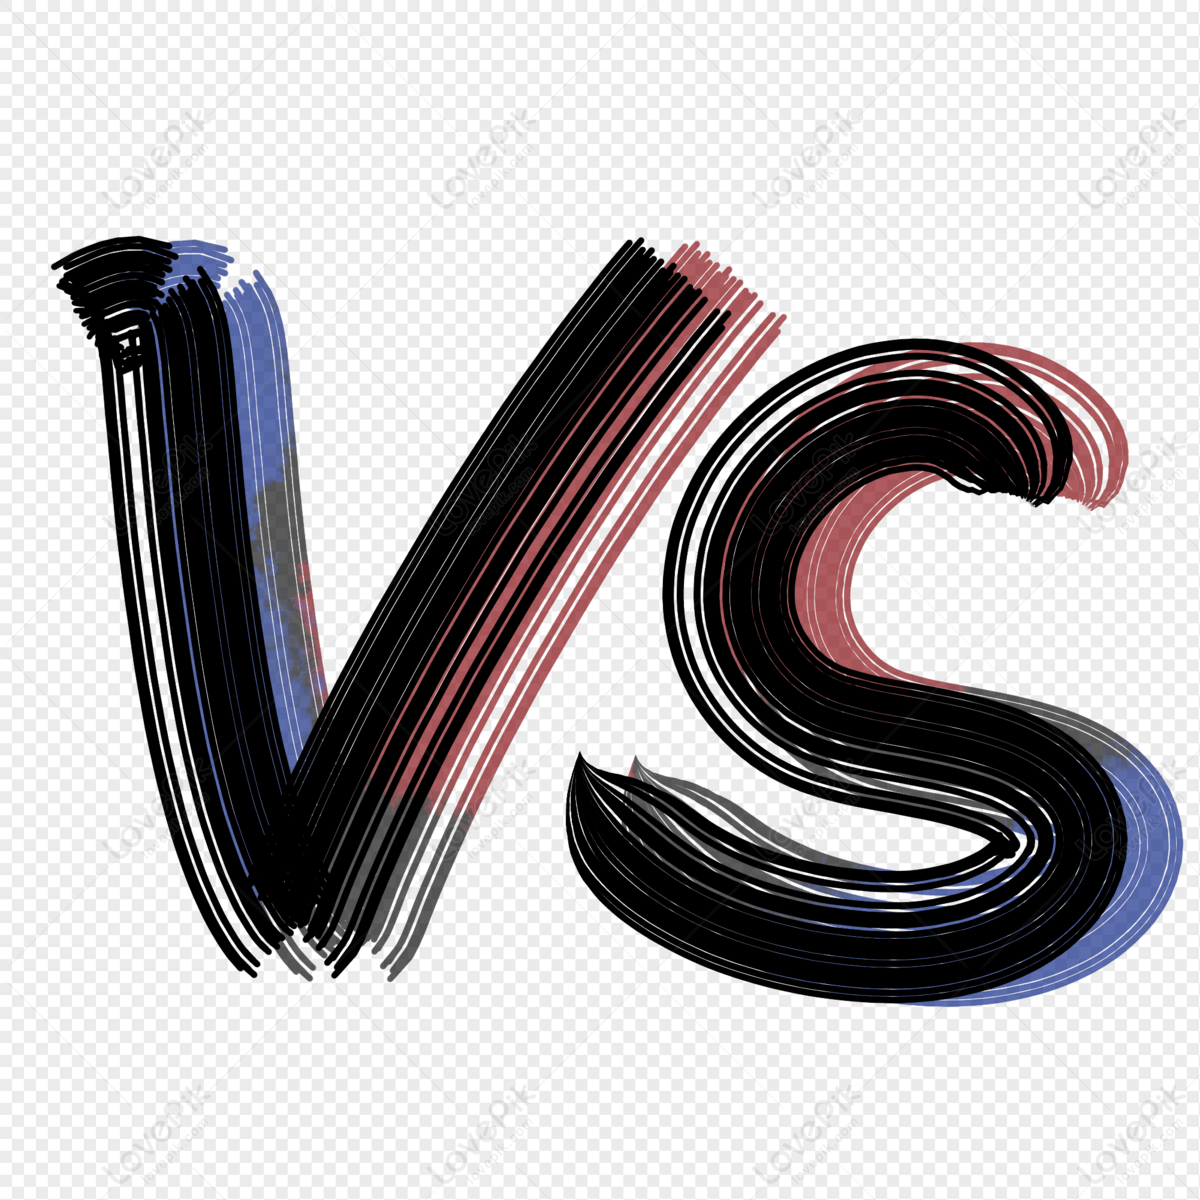 Tải Ngay Logo Vinfast File Vector Miễn Phí | Túi Vải Thành Tiến